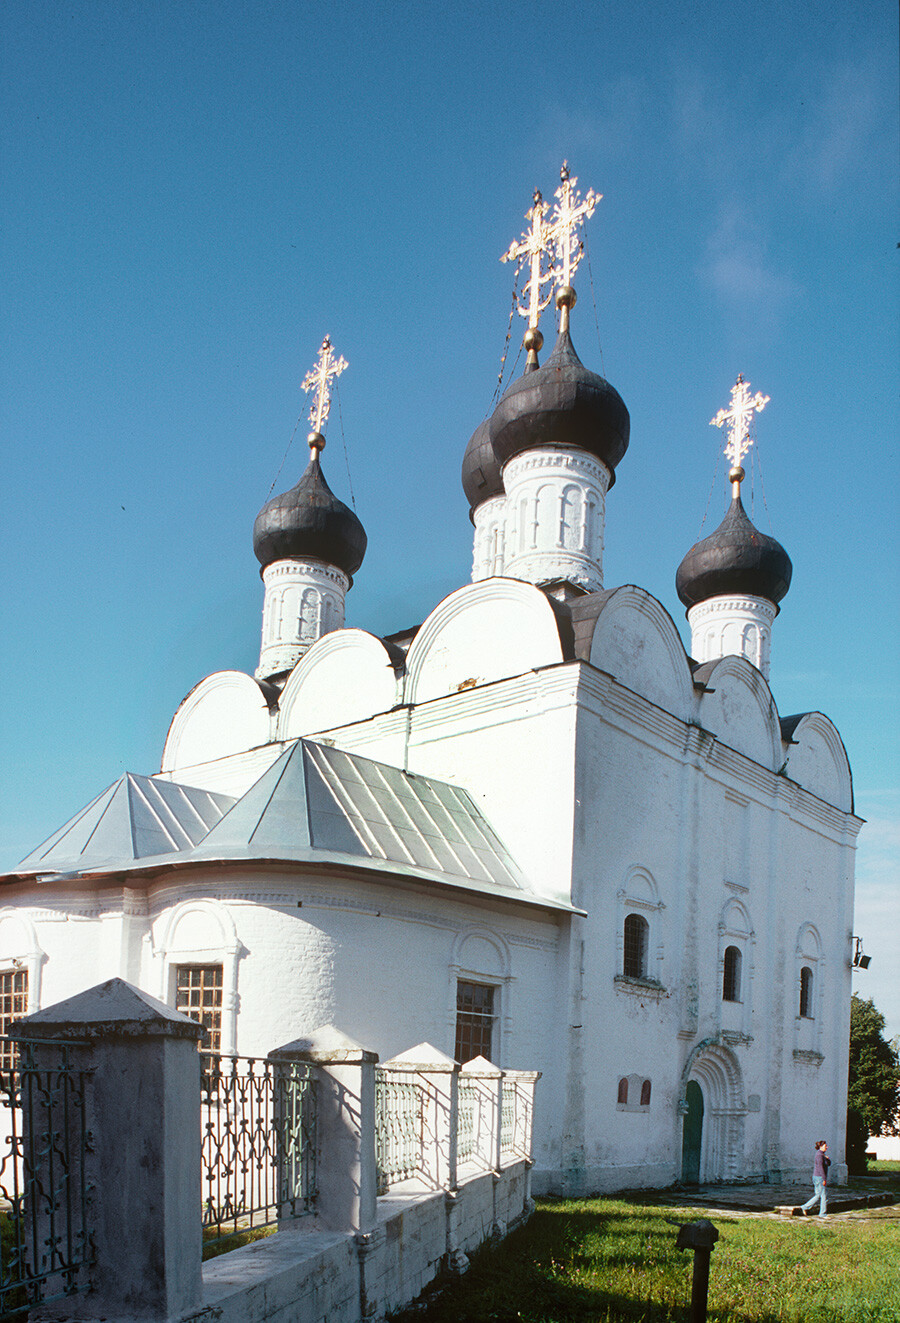 Zaraisk Kremlin. St. Nicholas Cathedral, northeast view. August 22, 2003